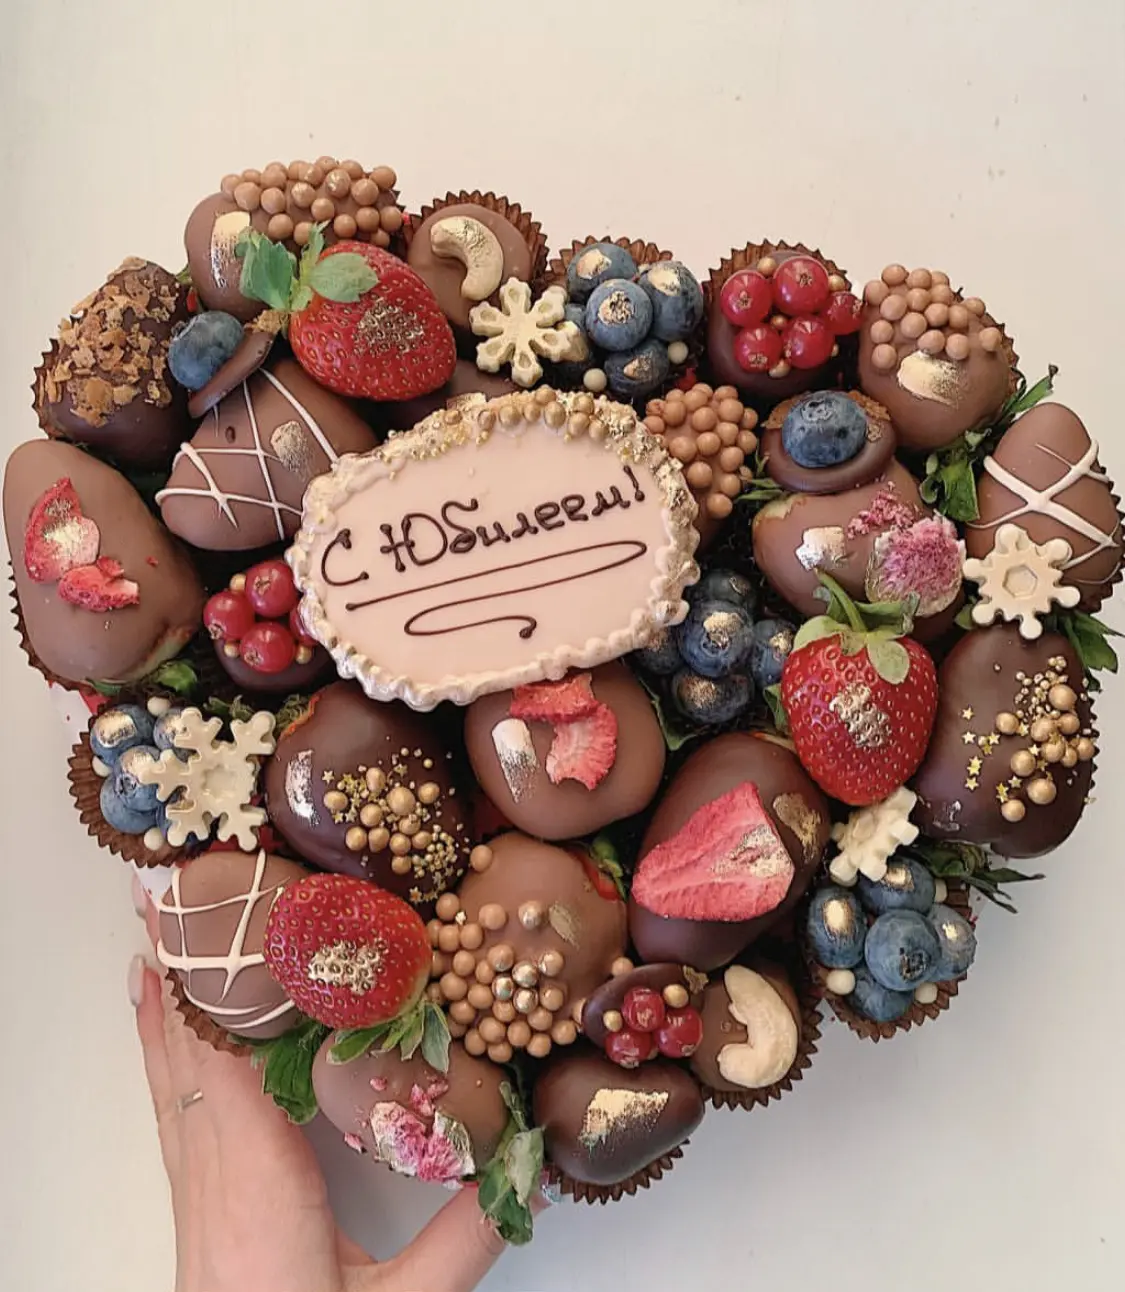 Клубника в шоколаде в коробке в форме сердца "Шоколадное счастье" 3 200 руб.. Фото N2